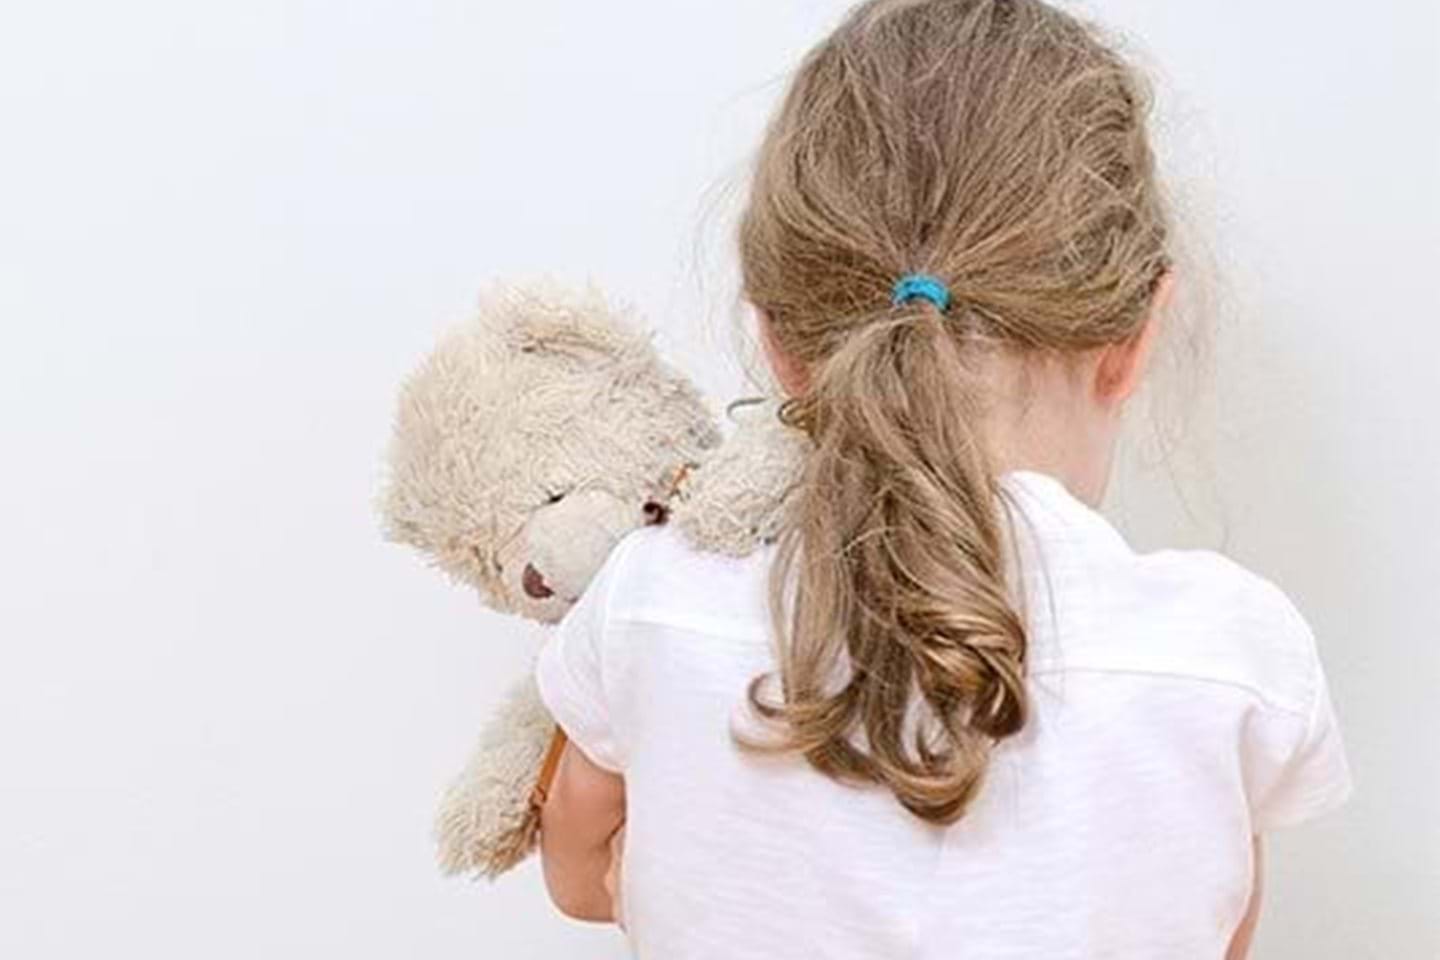 Barnevernvakt tilrettelegger sikker kommunikasjonen fra vakt til barnevern om barn i krise. Bildet viser en ung jente står med ryggen til kameraet og holder en bamse over skulderen sin.